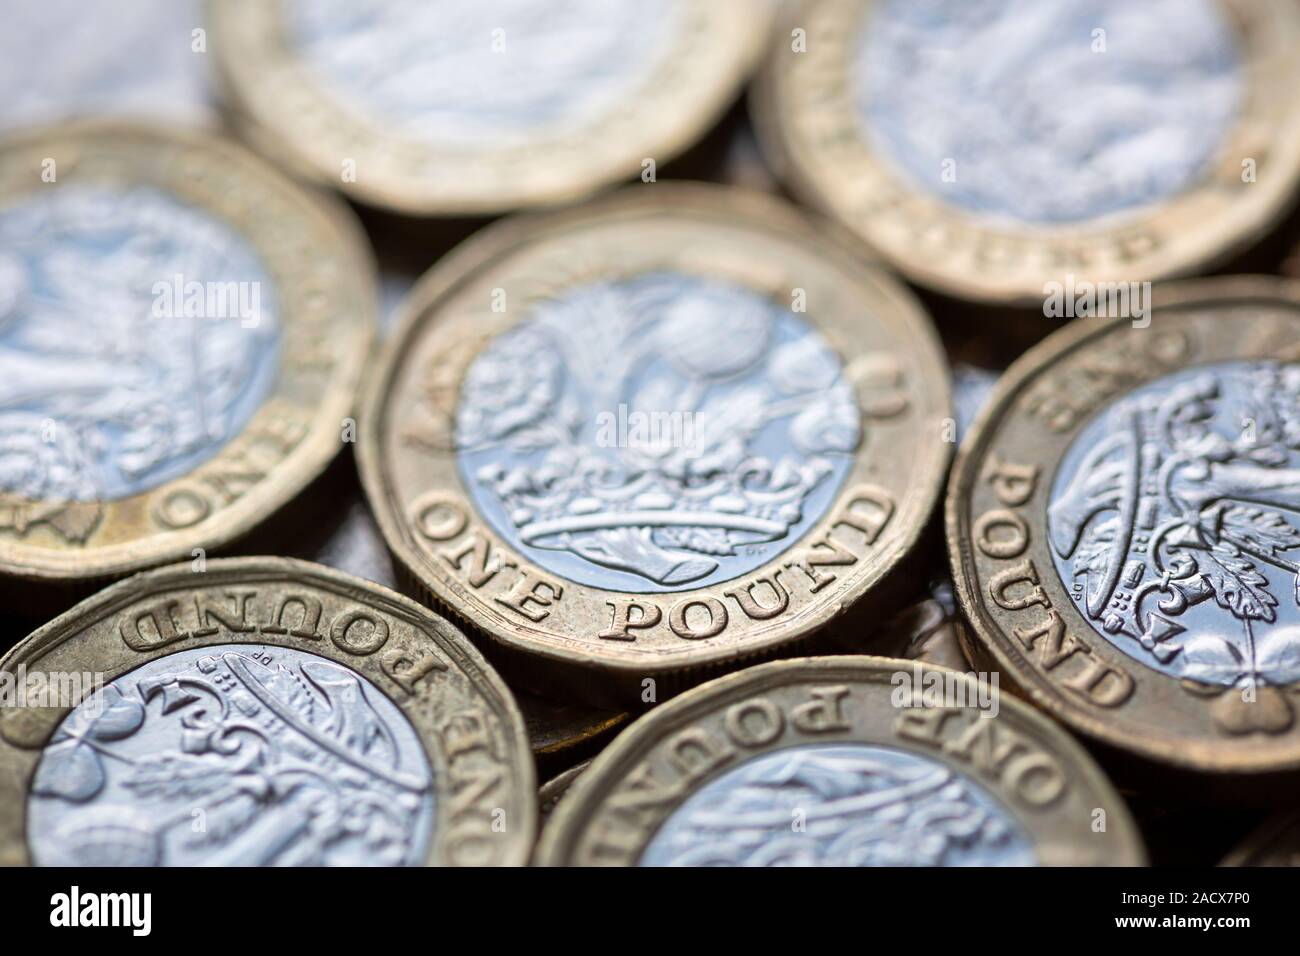 Nahaufnahme von einem Haufen von Britischen Pfund Münzen mit selektiven Fokus auf einem die Worte "Pound" Stockfoto